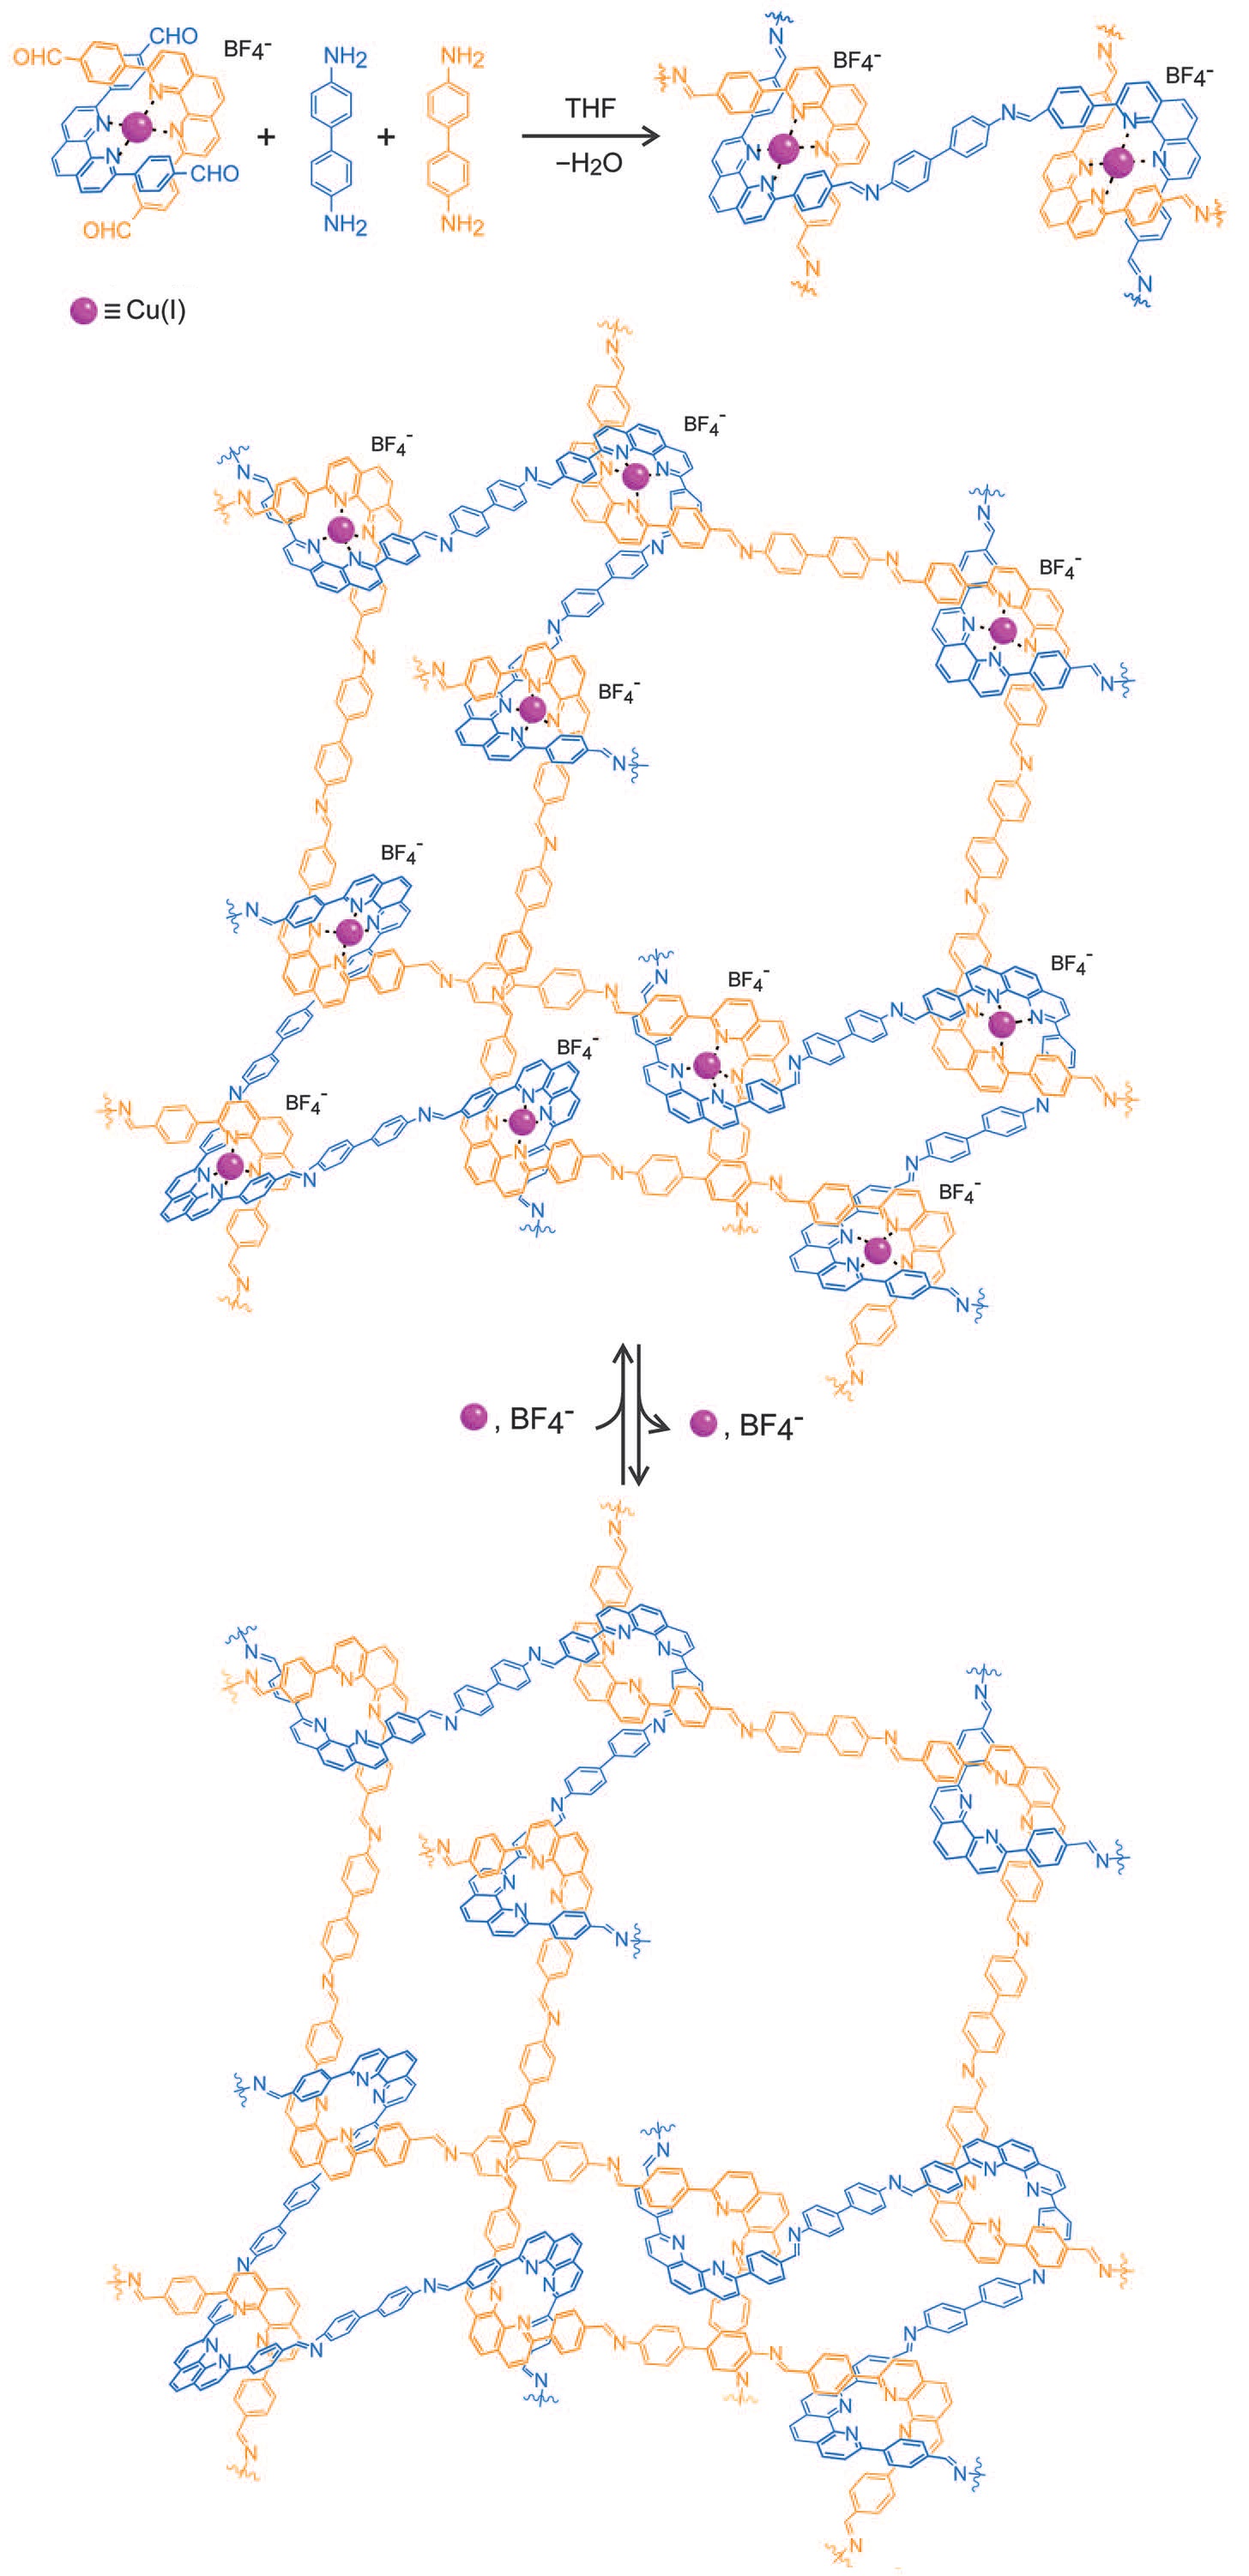 Postup syntézy tkané makromolekuly z horního levého rohu dolů, připravená struktura je znázorněna úplně dole, THF značí rozpouštědlo tetrahydrofuran, BF4- tetrafluoroboritanový aniont, měďné kationy znázorňují fialové kroužky, Y. Liu et al., Science 351, 365 (2016)